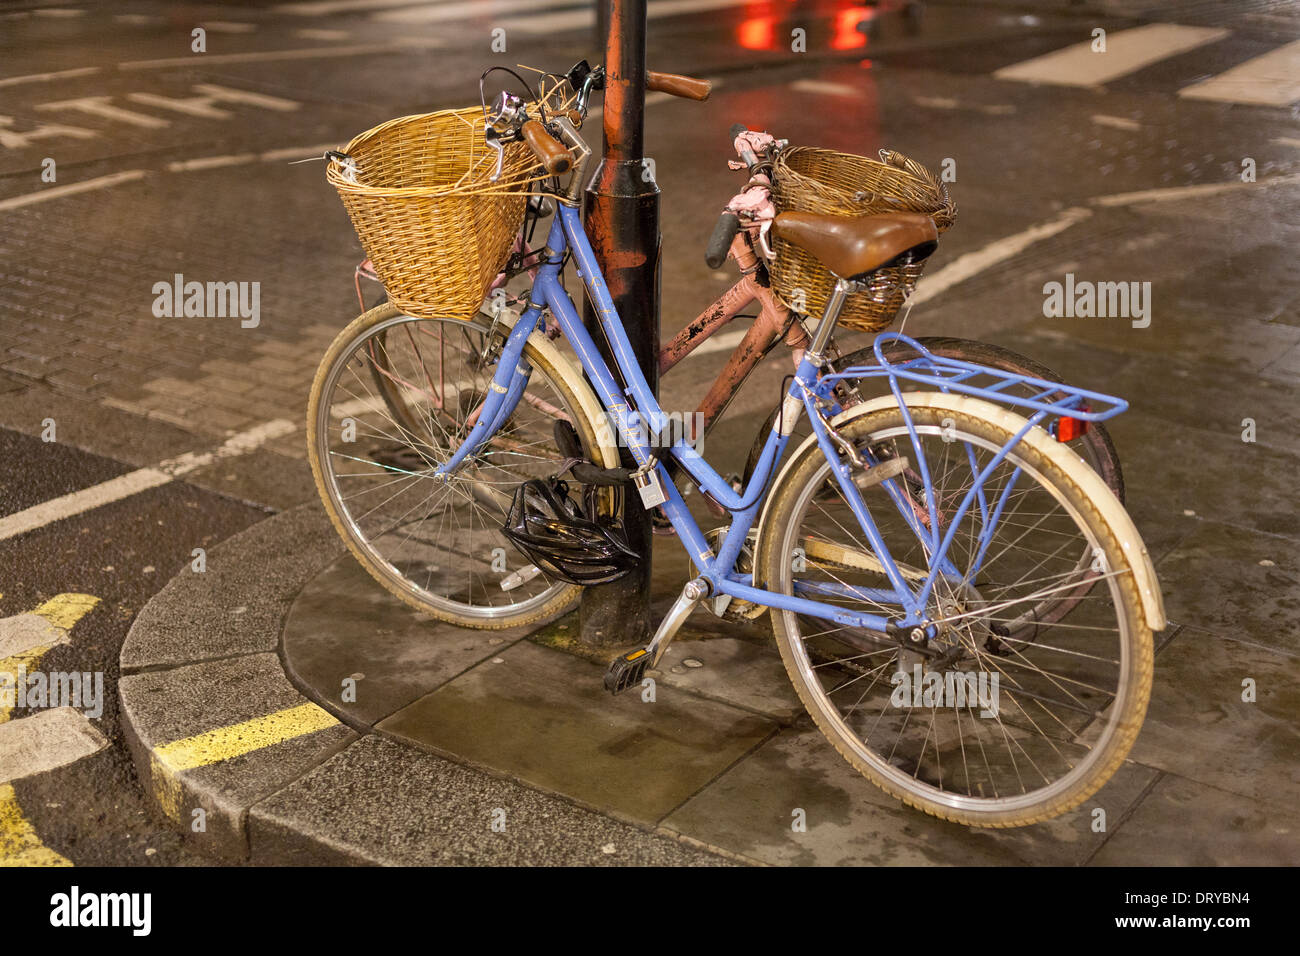 Bicicletas encadenadas a poste de la luz por la noche,West End, Londres, Inglaterra Foto de stock